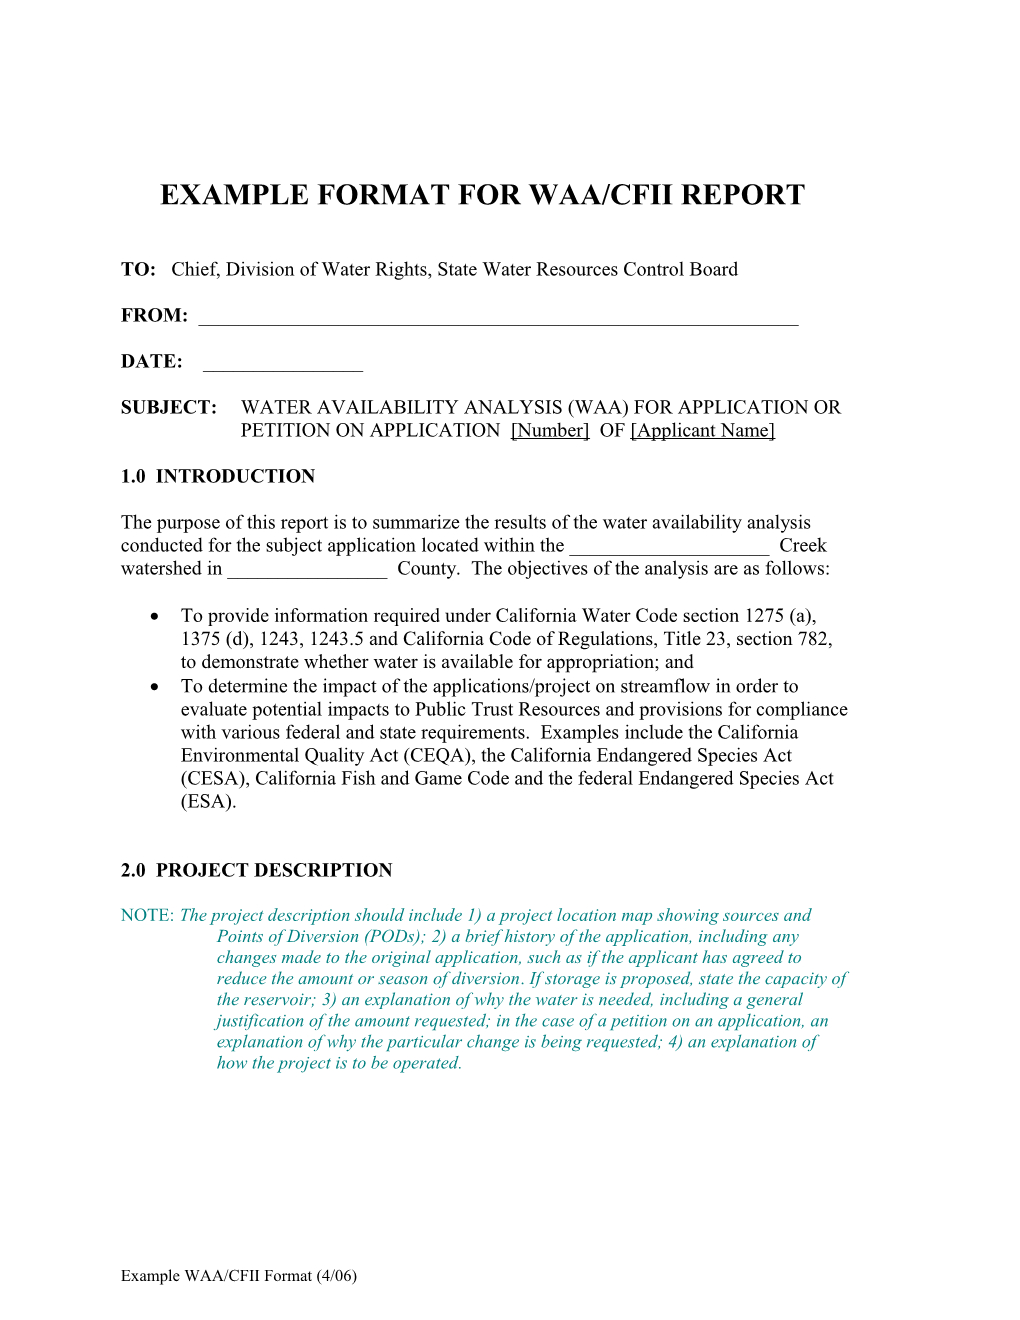 Example Format for Waa/Cfii Report